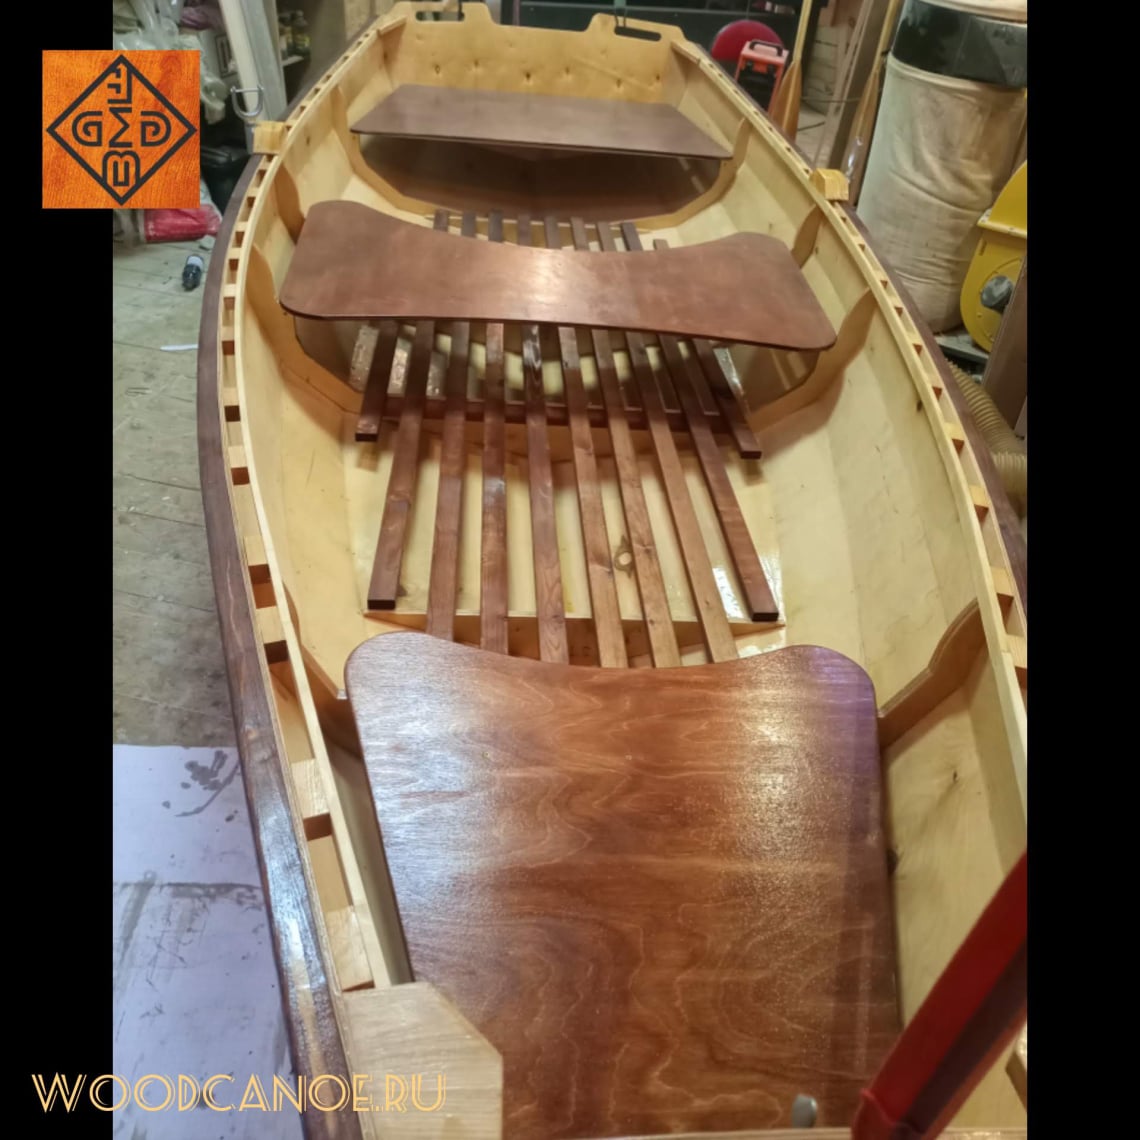 Вопросы по строительству и ремонту лодок из дерева и стеклоткани